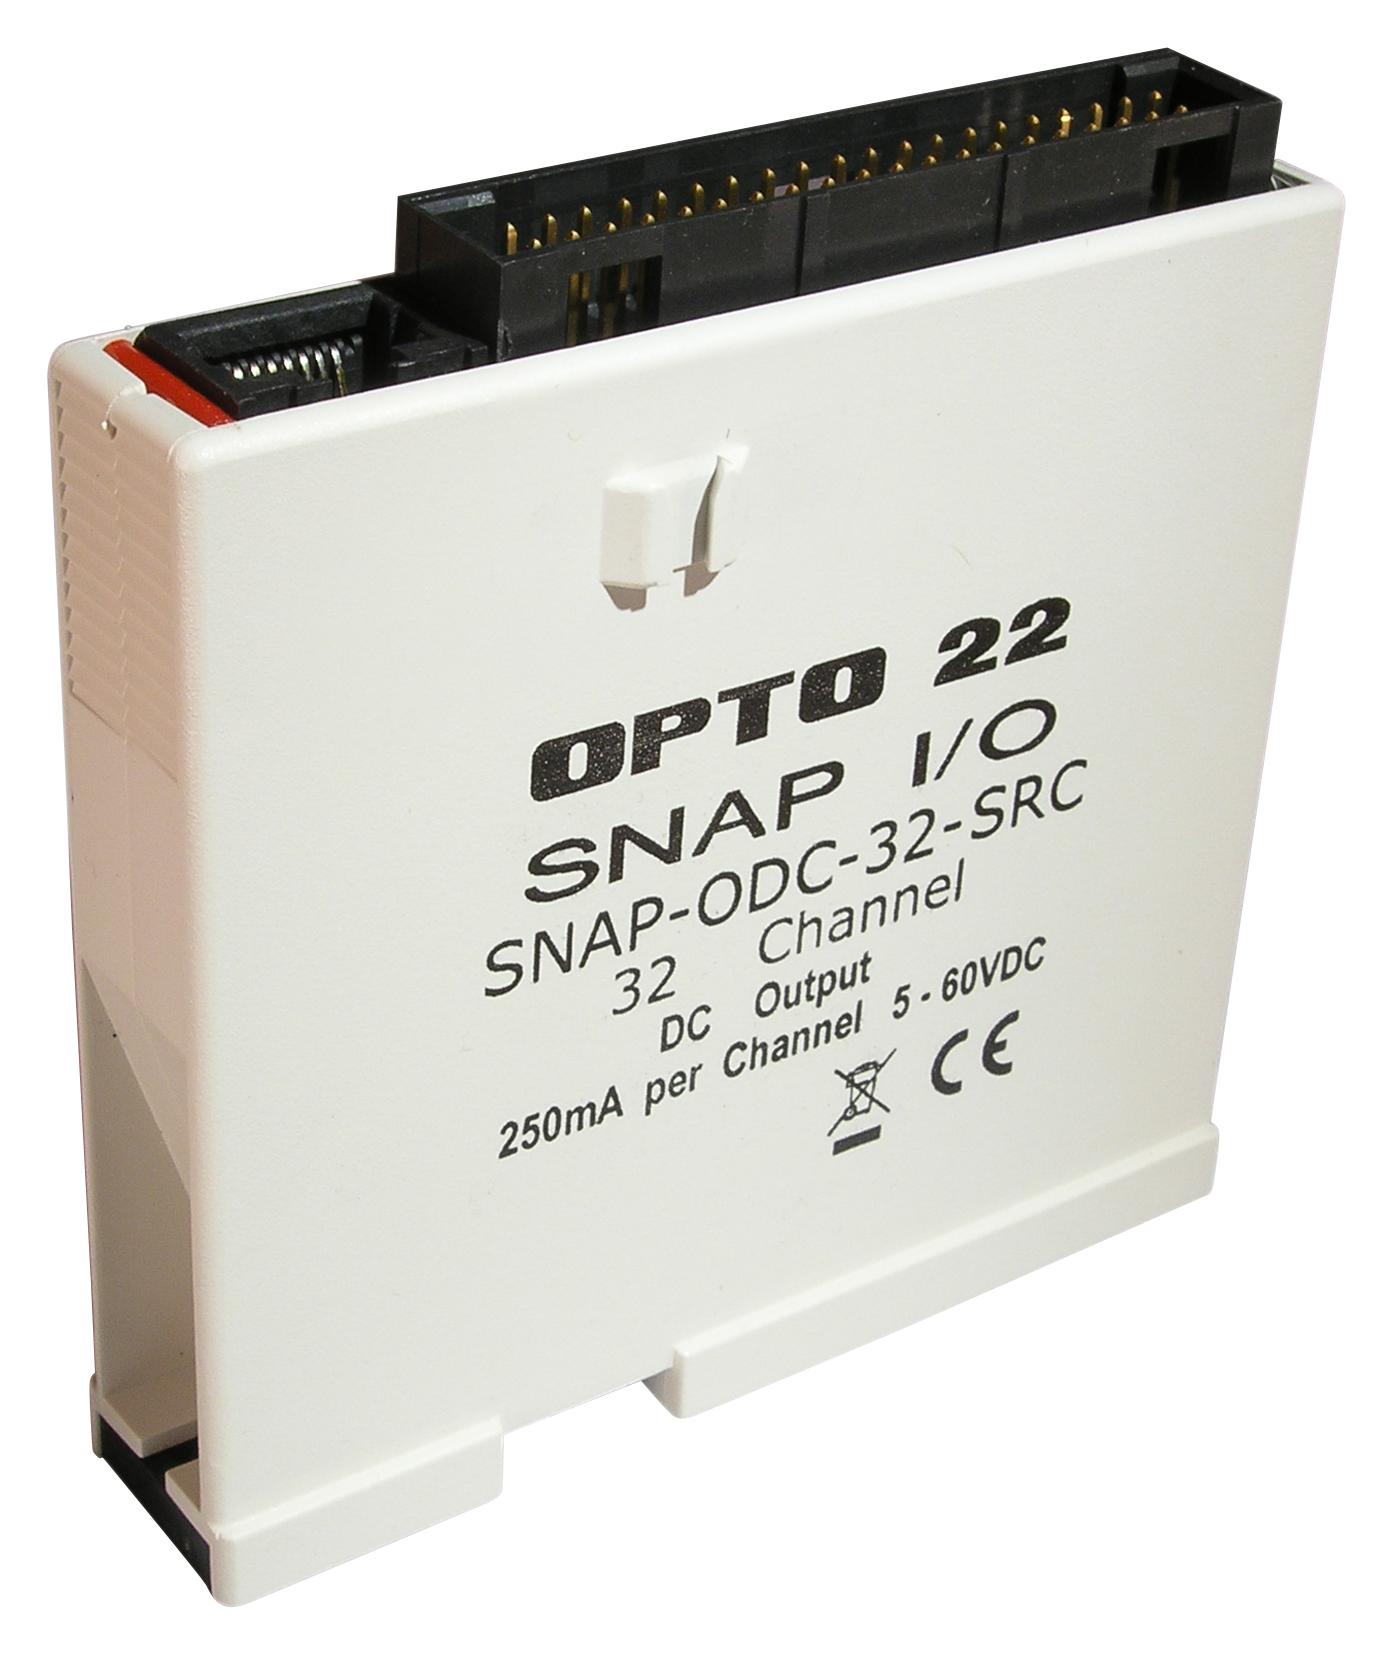 SNAPODC32SRC DIGITAL O/P MODULE, 32-CH, 60VDC OPTO 22